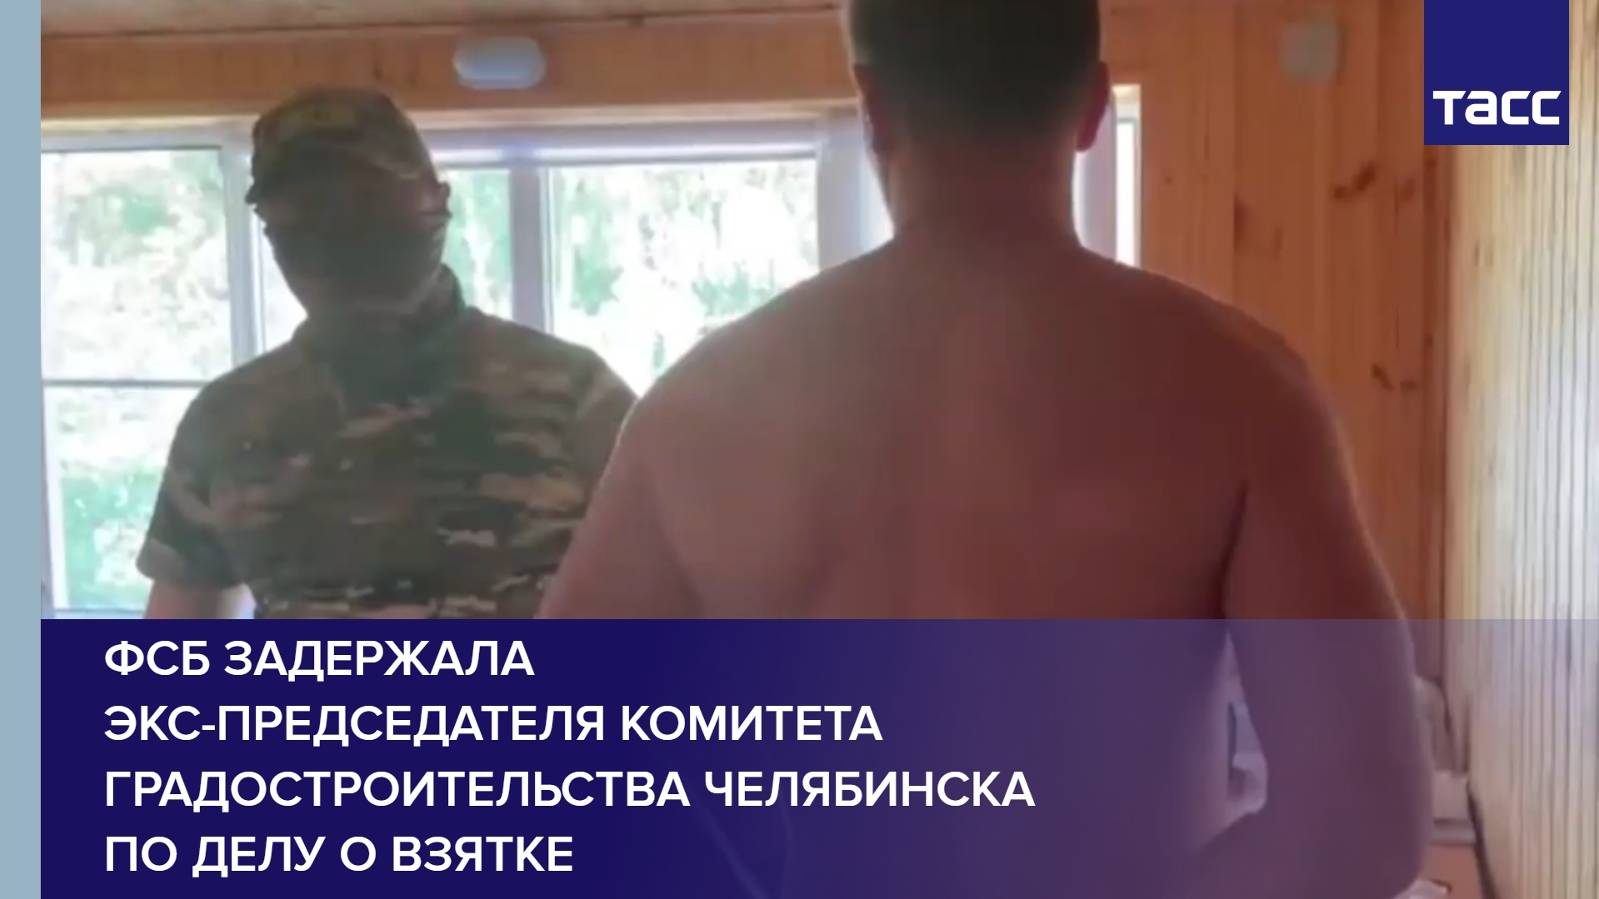 ФСБ задержала экс-председателя комитета градостроительства Челябинска по делу о взятке